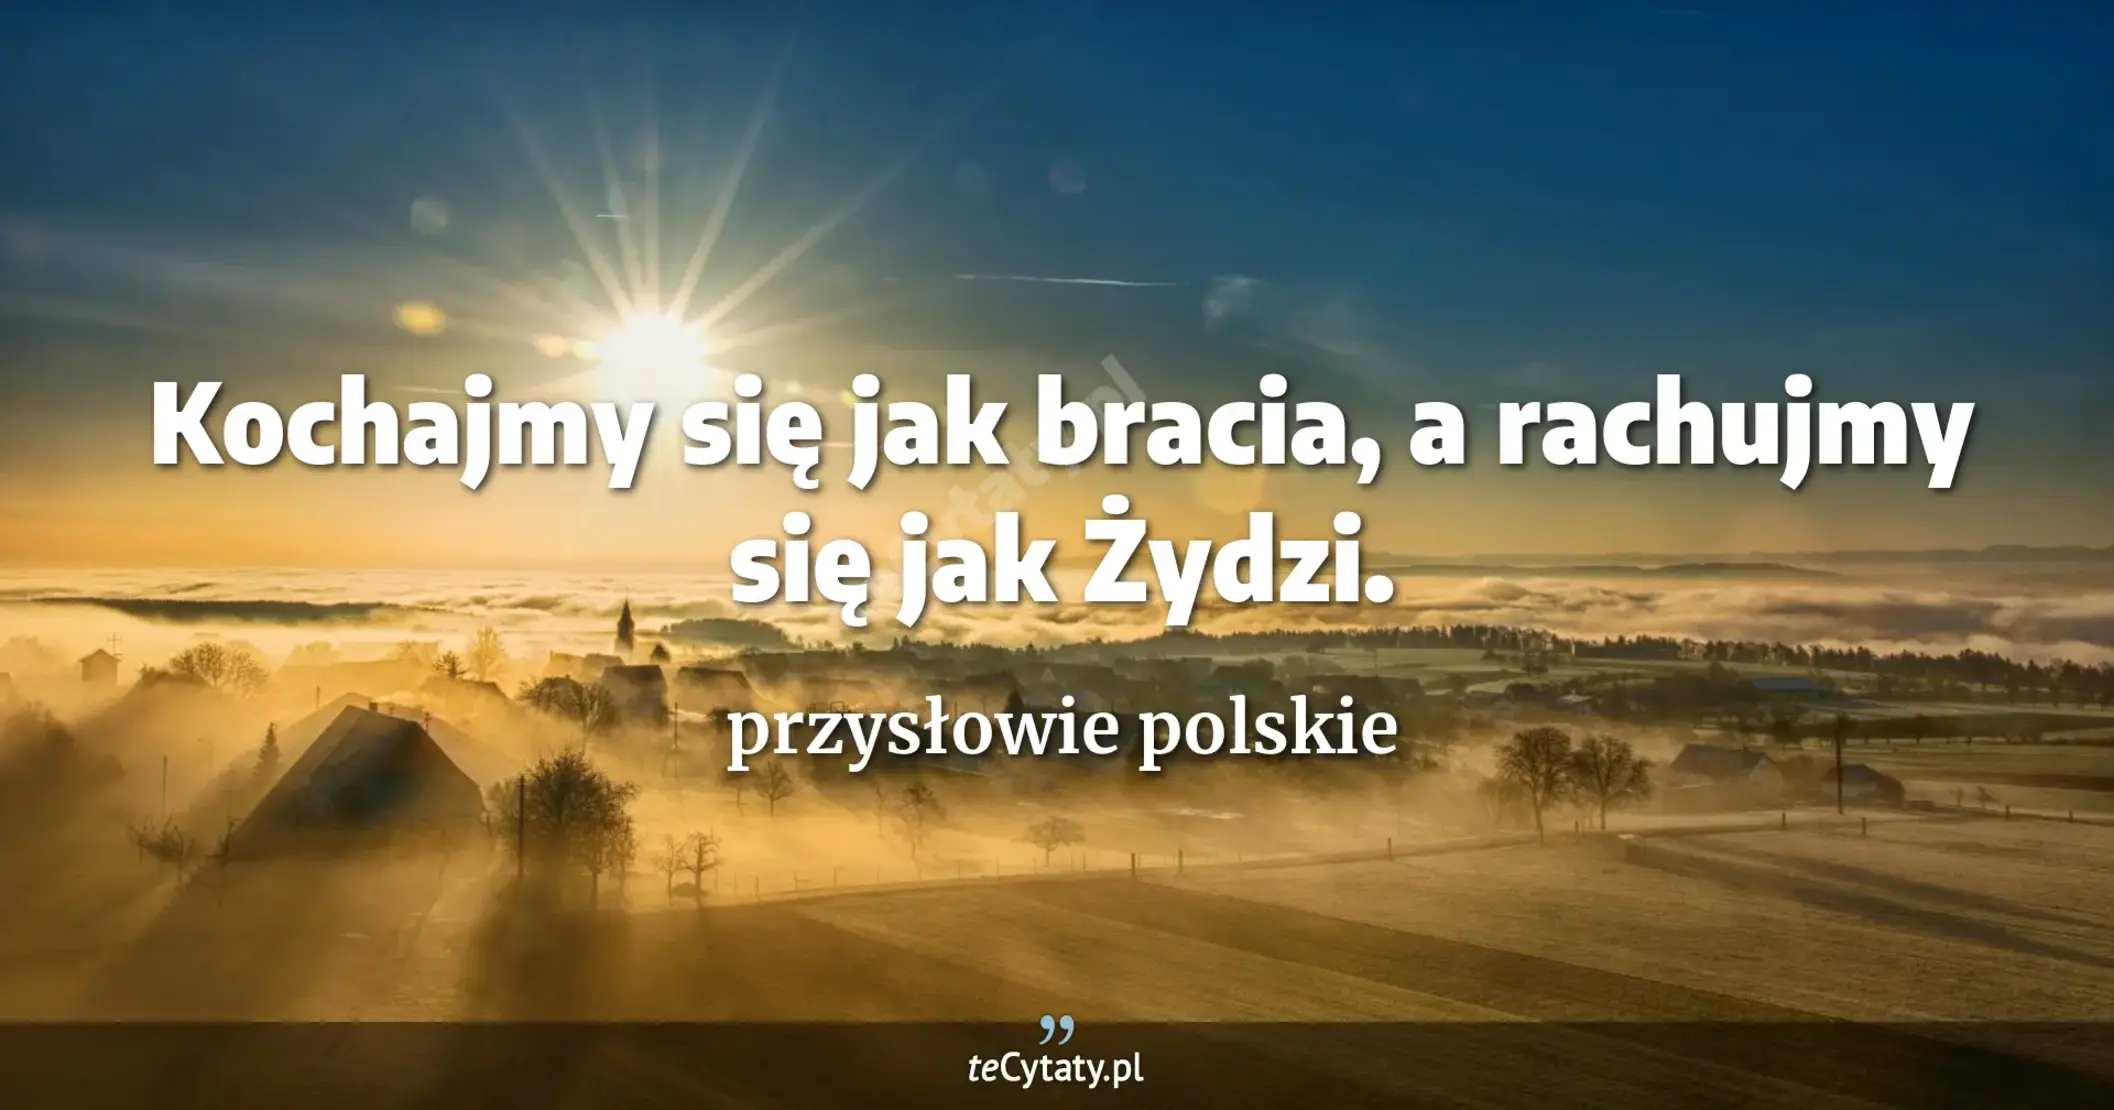 Kochajmy się jak bracia, a rachujmy się jak Żydzi. - przysłowie polskie